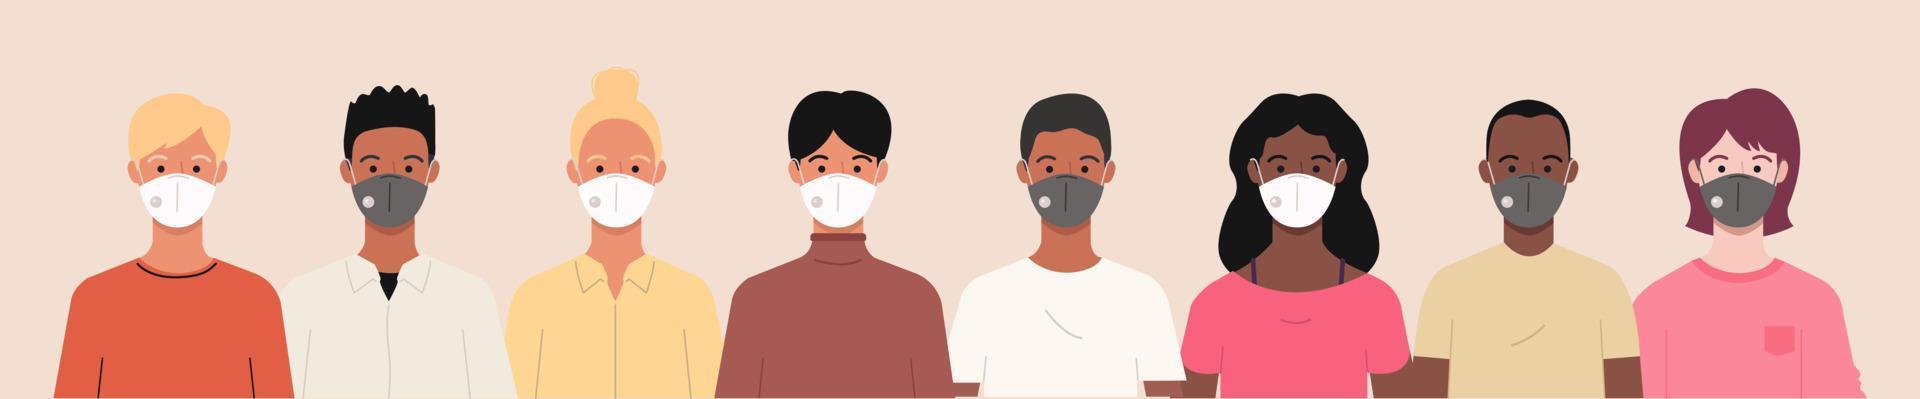 groupe de personnes portant des masques médicaux pour prévenir le coronavirus, la maladie covid-19, la grippe, la pollution de l'air, l'air contaminé et la pollution mondiale. illustration de bannière de vecteur dans un style plat